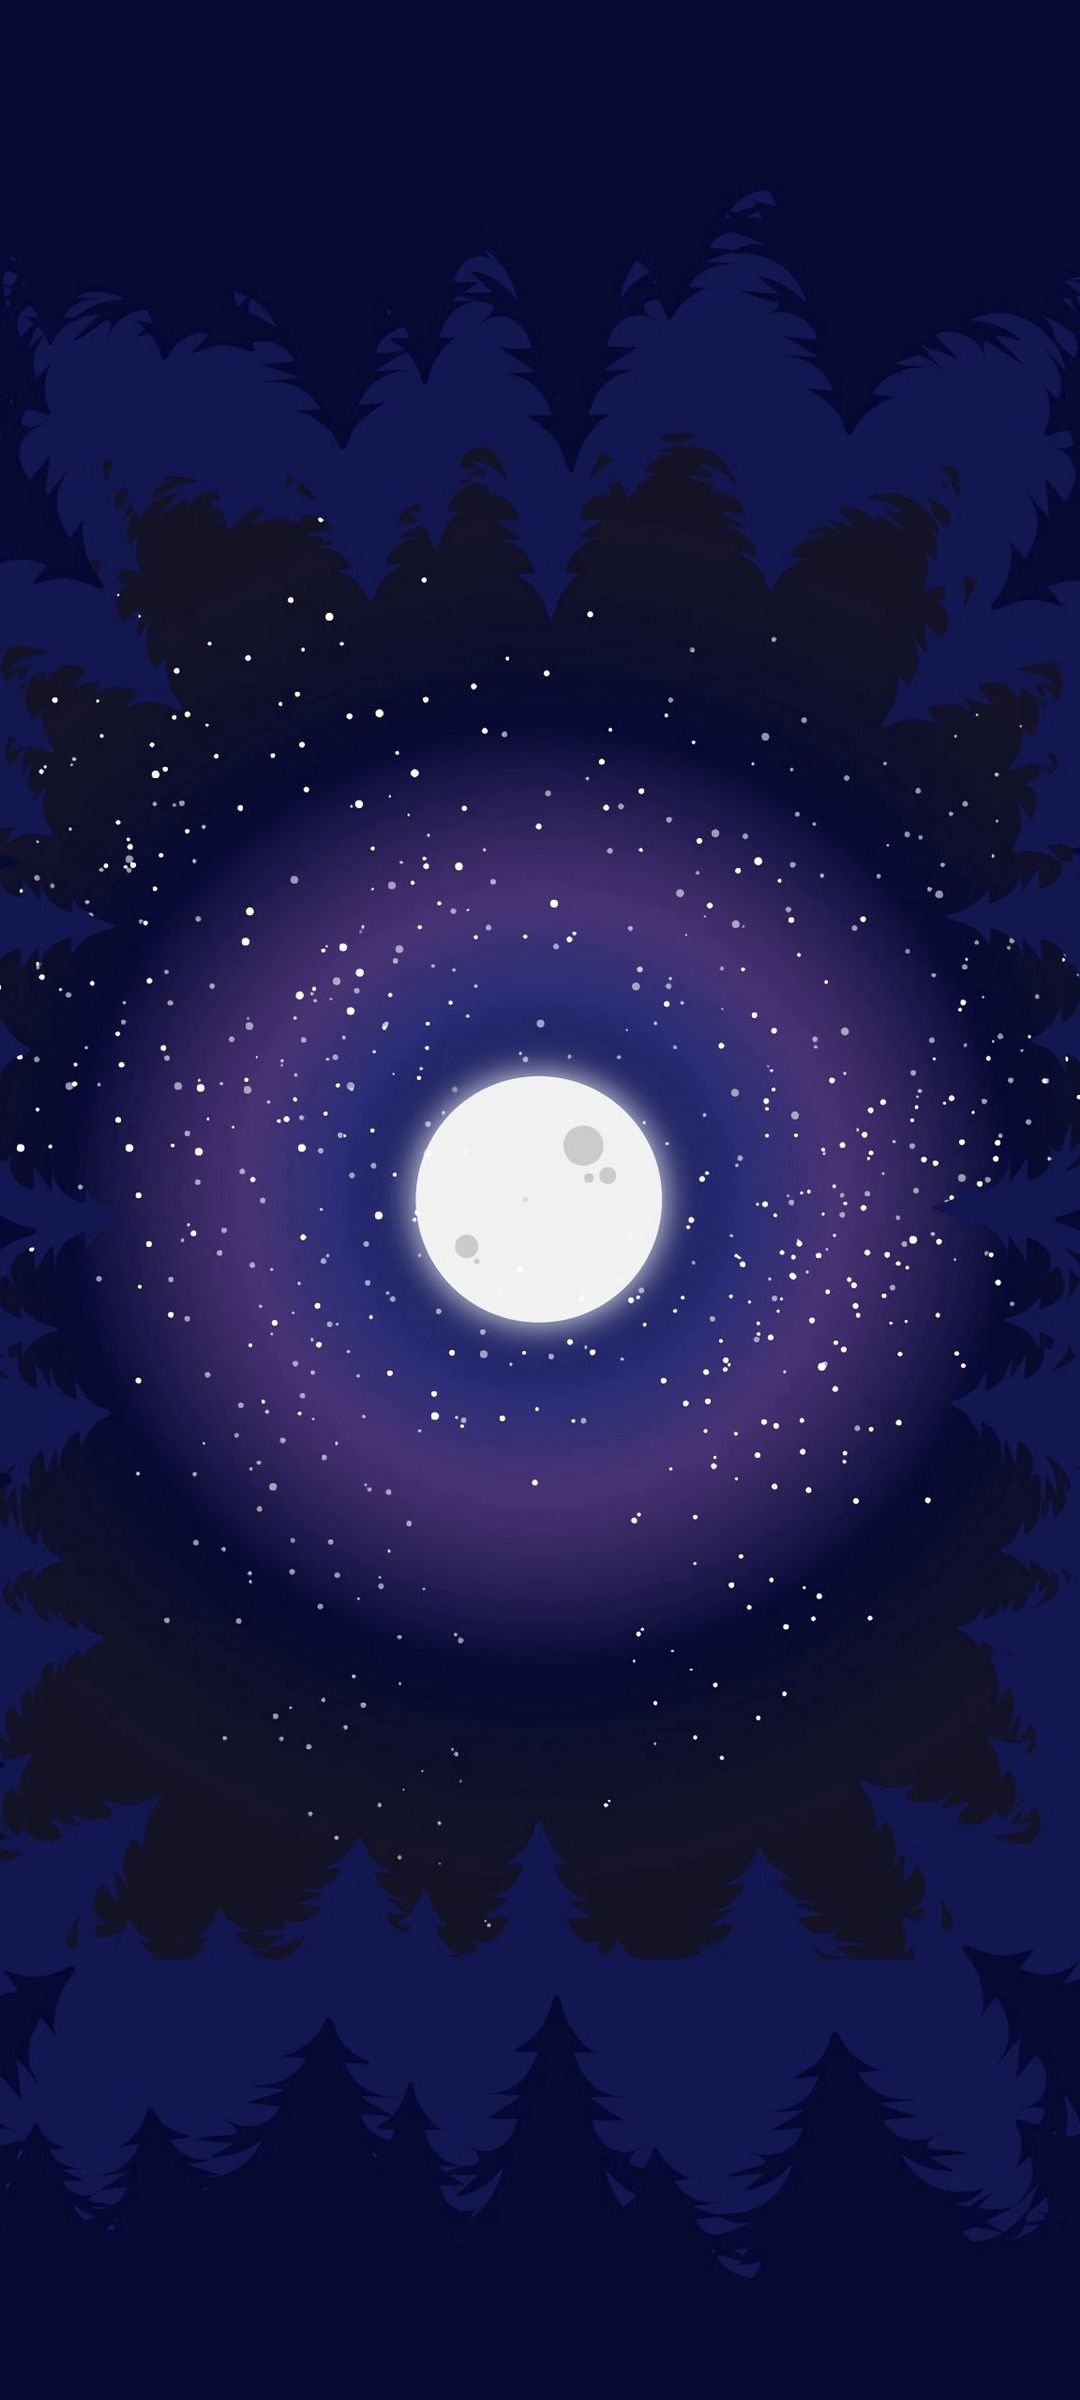 綺麗な月と宇宙のイラスト Galaxy S21 5g 壁紙 待ち受け スマラン